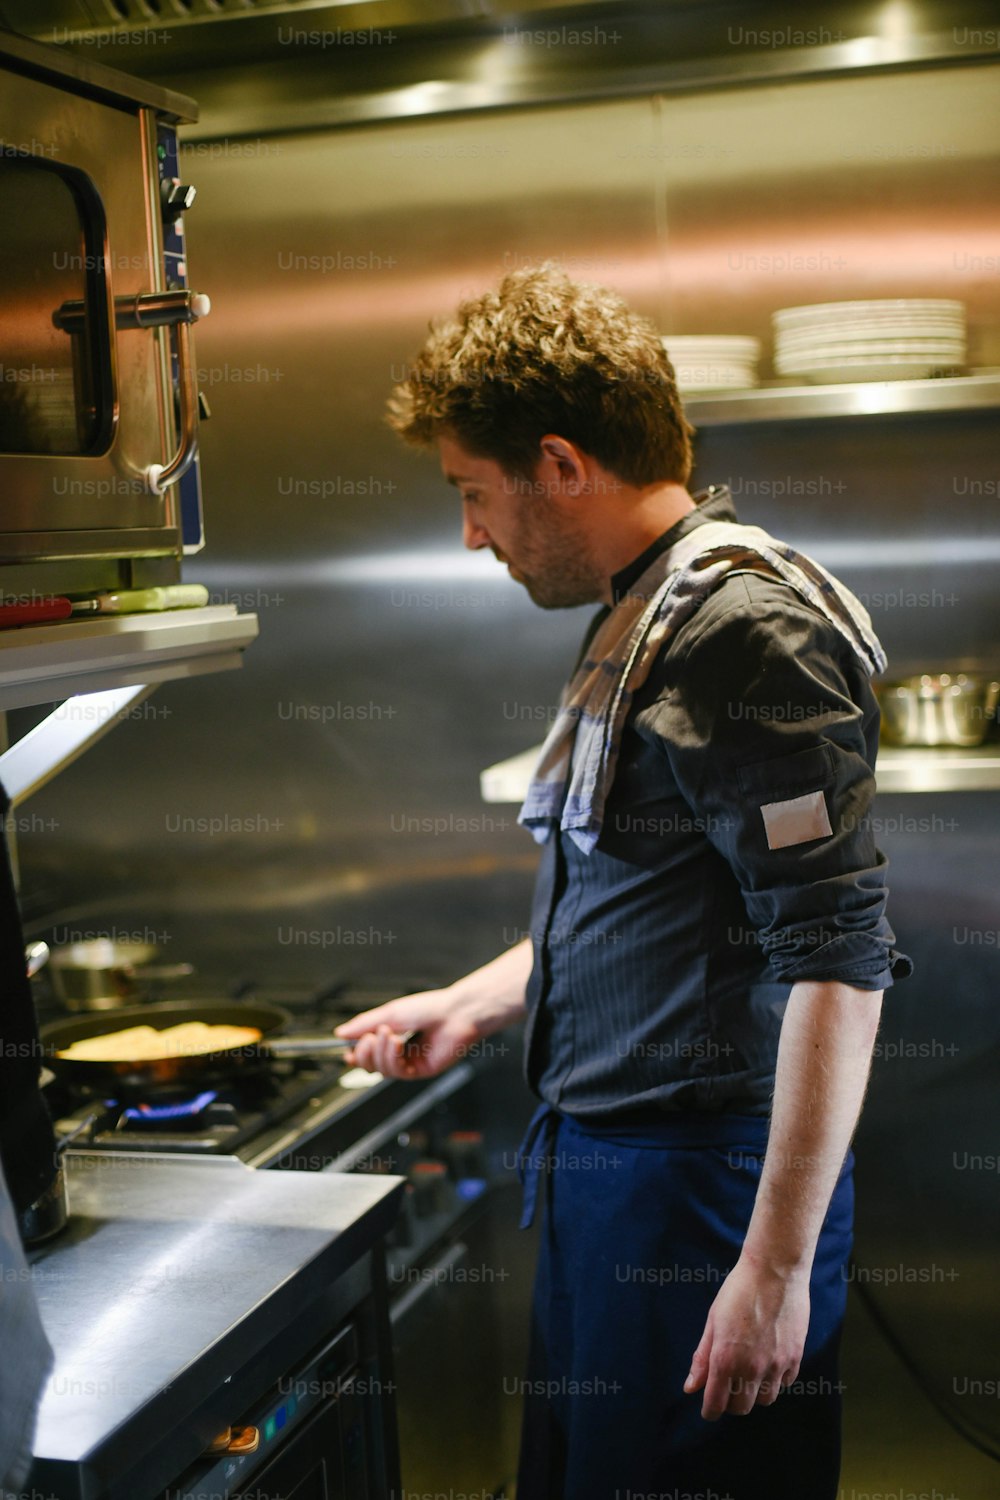 Un hombre parado en una cocina preparando comida